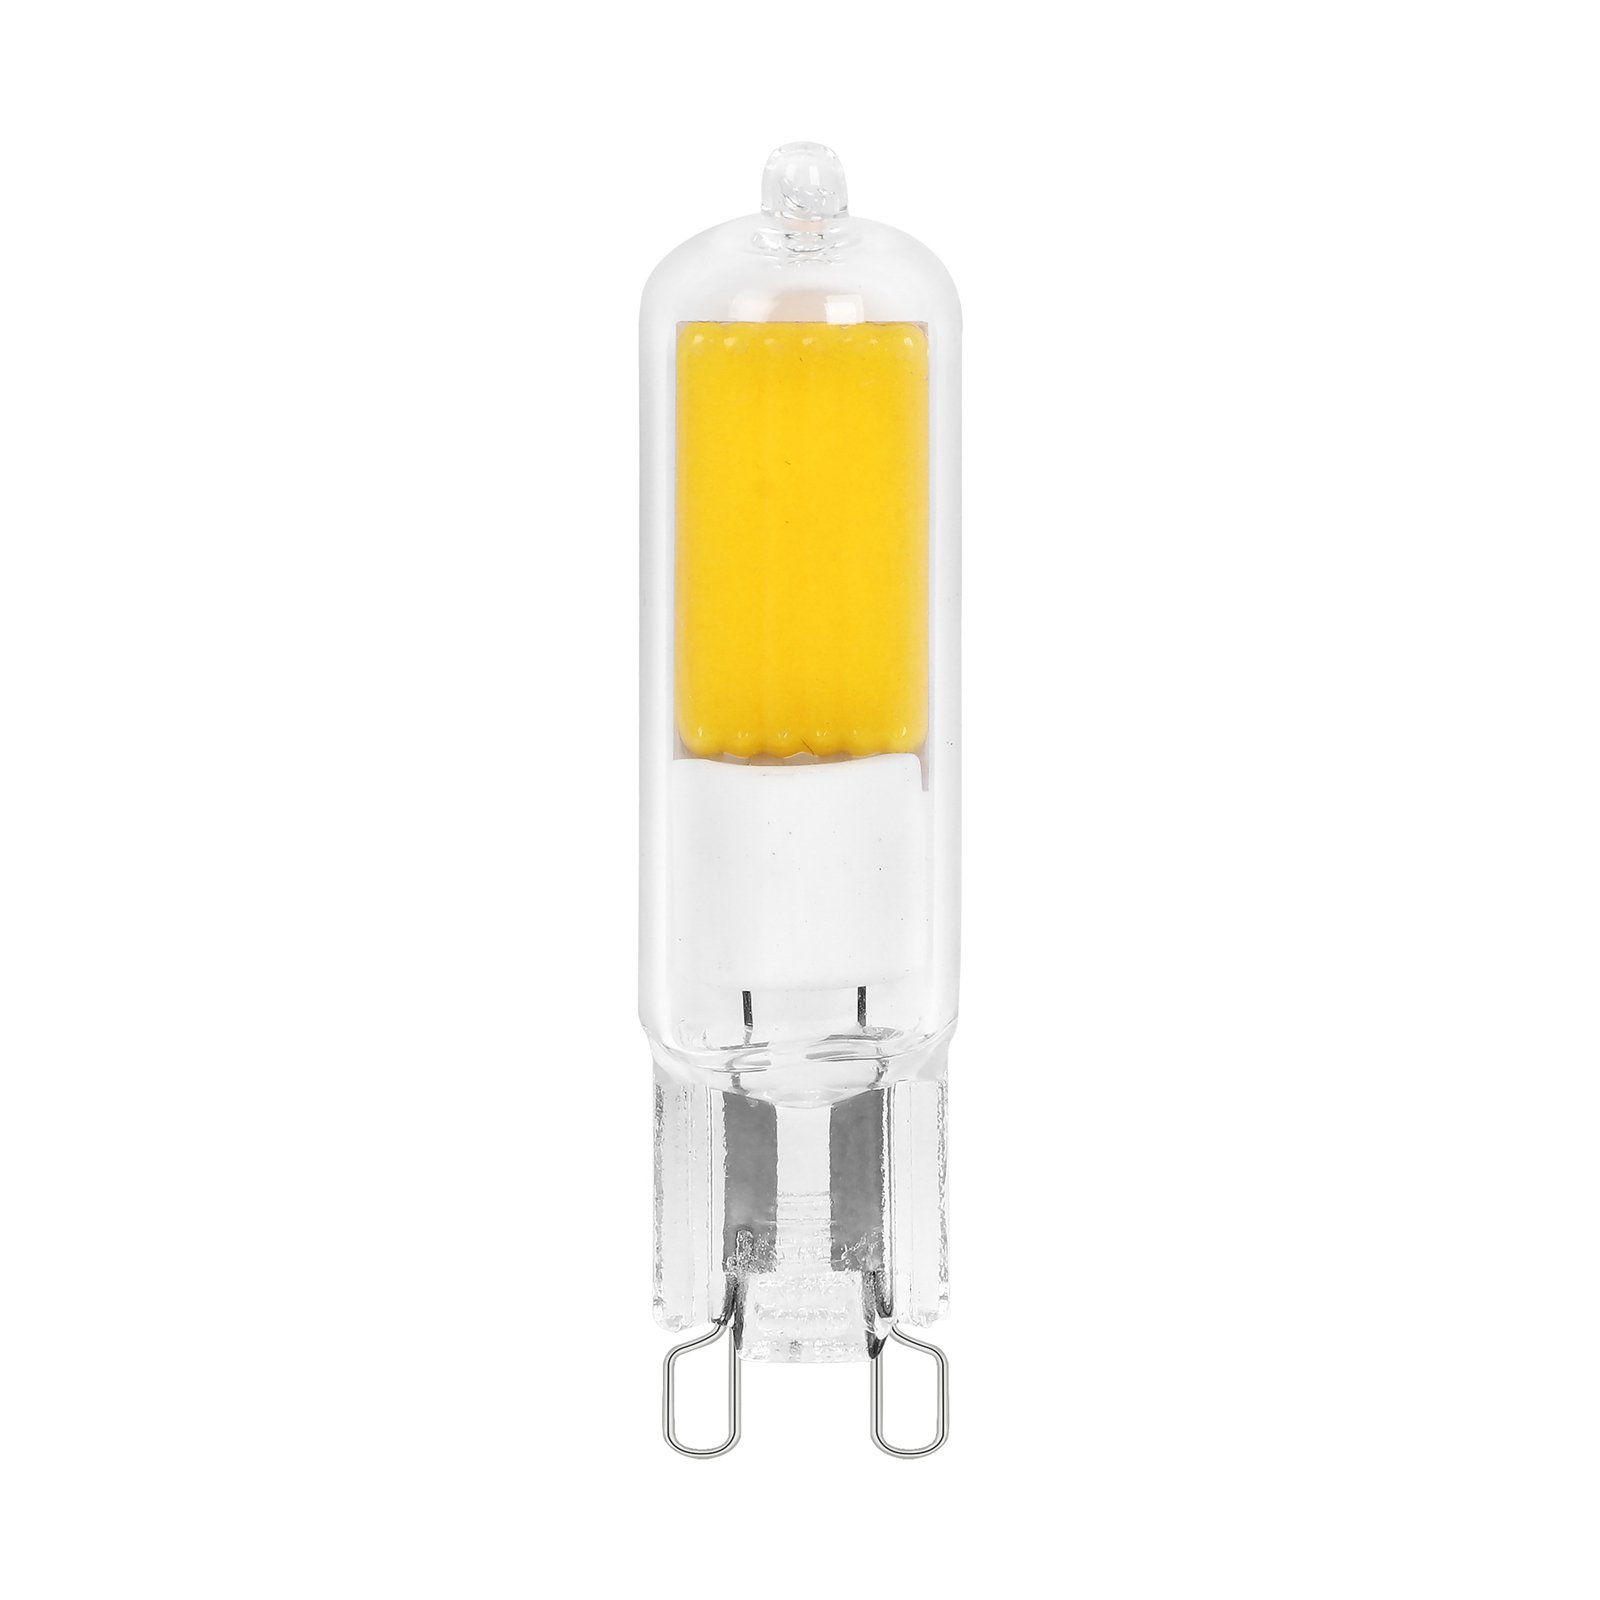 Arcchio bi-pin LED bulb, G9, 4W, 3000K, set of 2